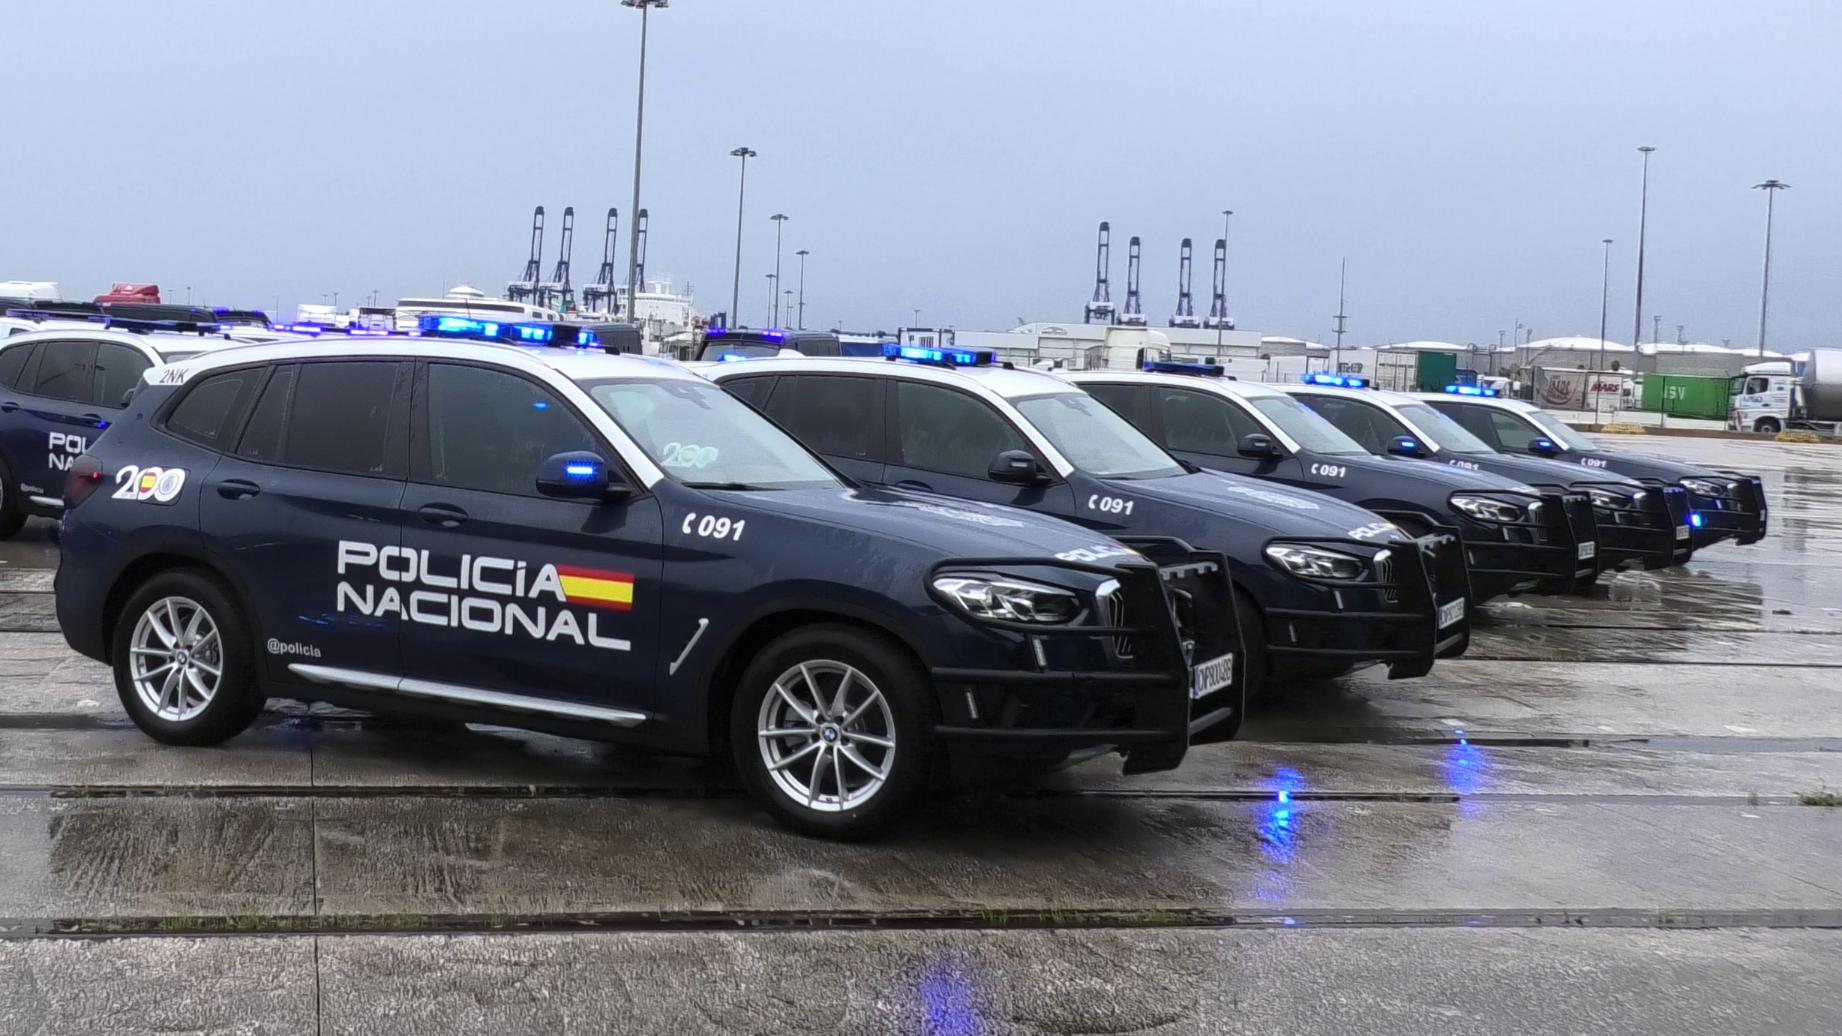 La Policía Nacional renueva su flota con 47 nuevos vehículos dentro del “Plan Especial de Seguridad para el Campo de Gibraltar”